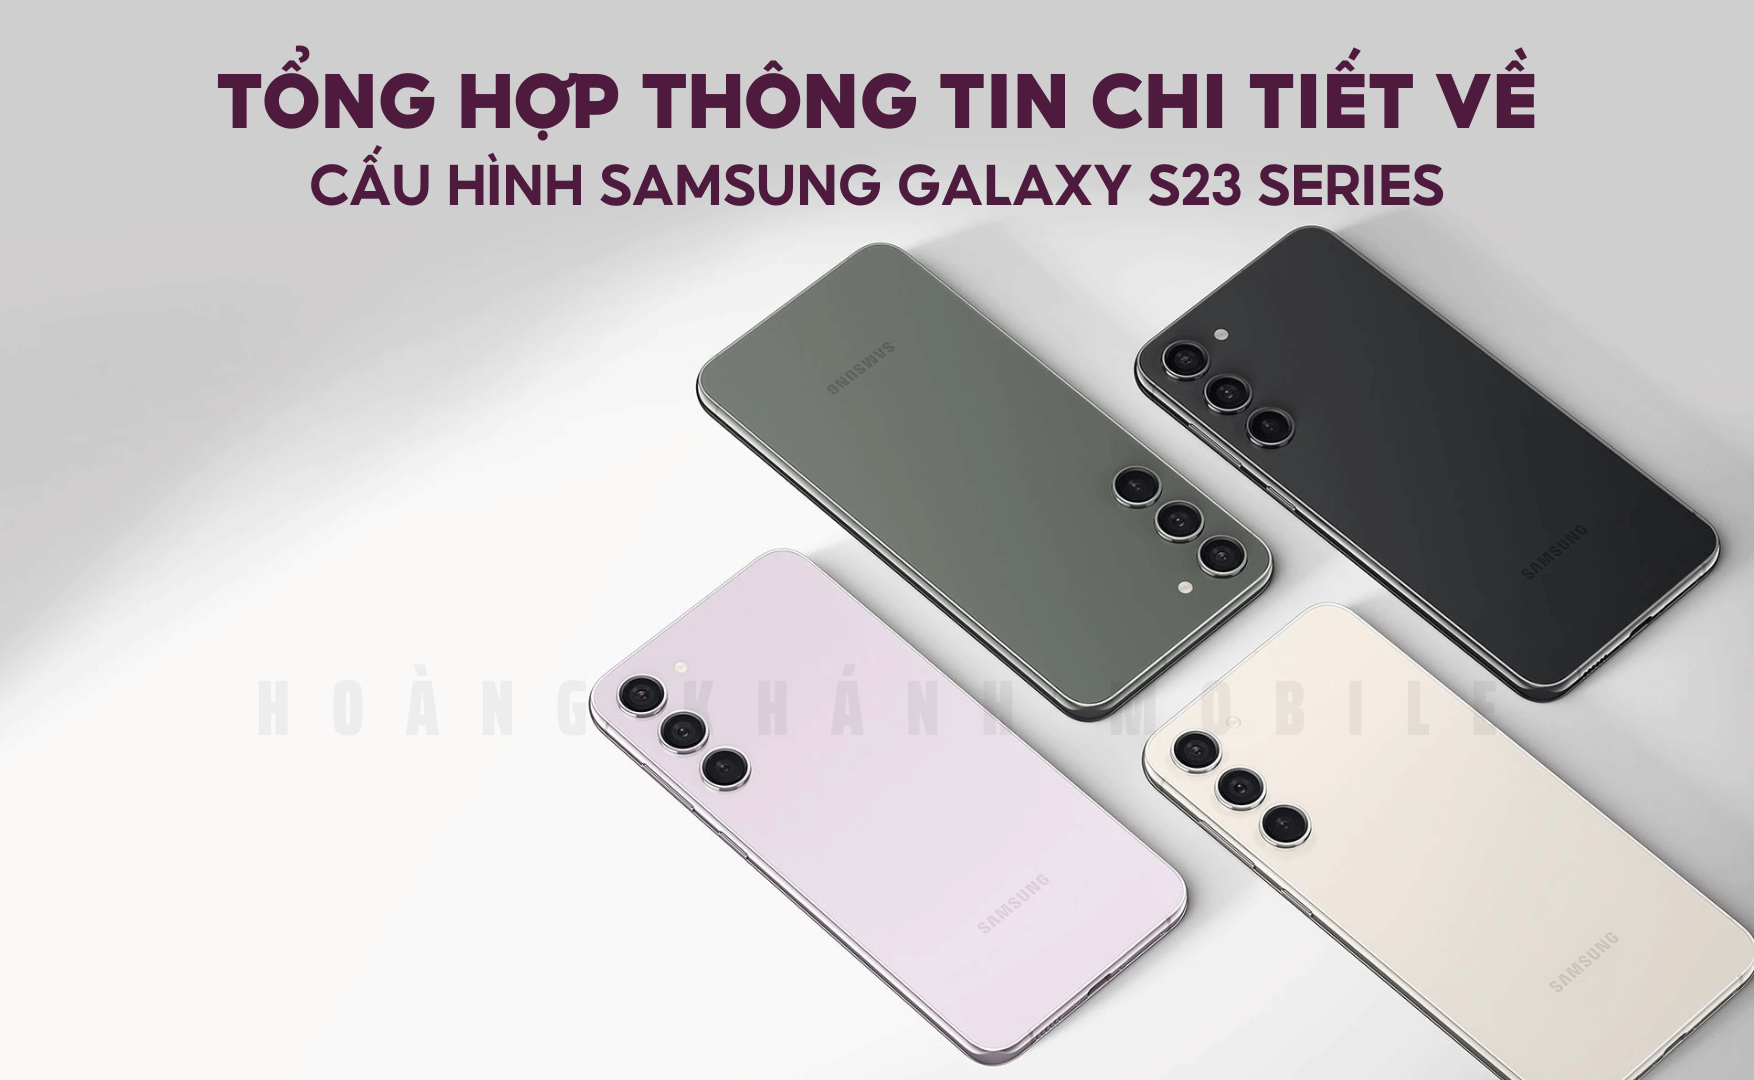 Thông tin chi tiết về cấu hình Samsung Galaxy S23 series